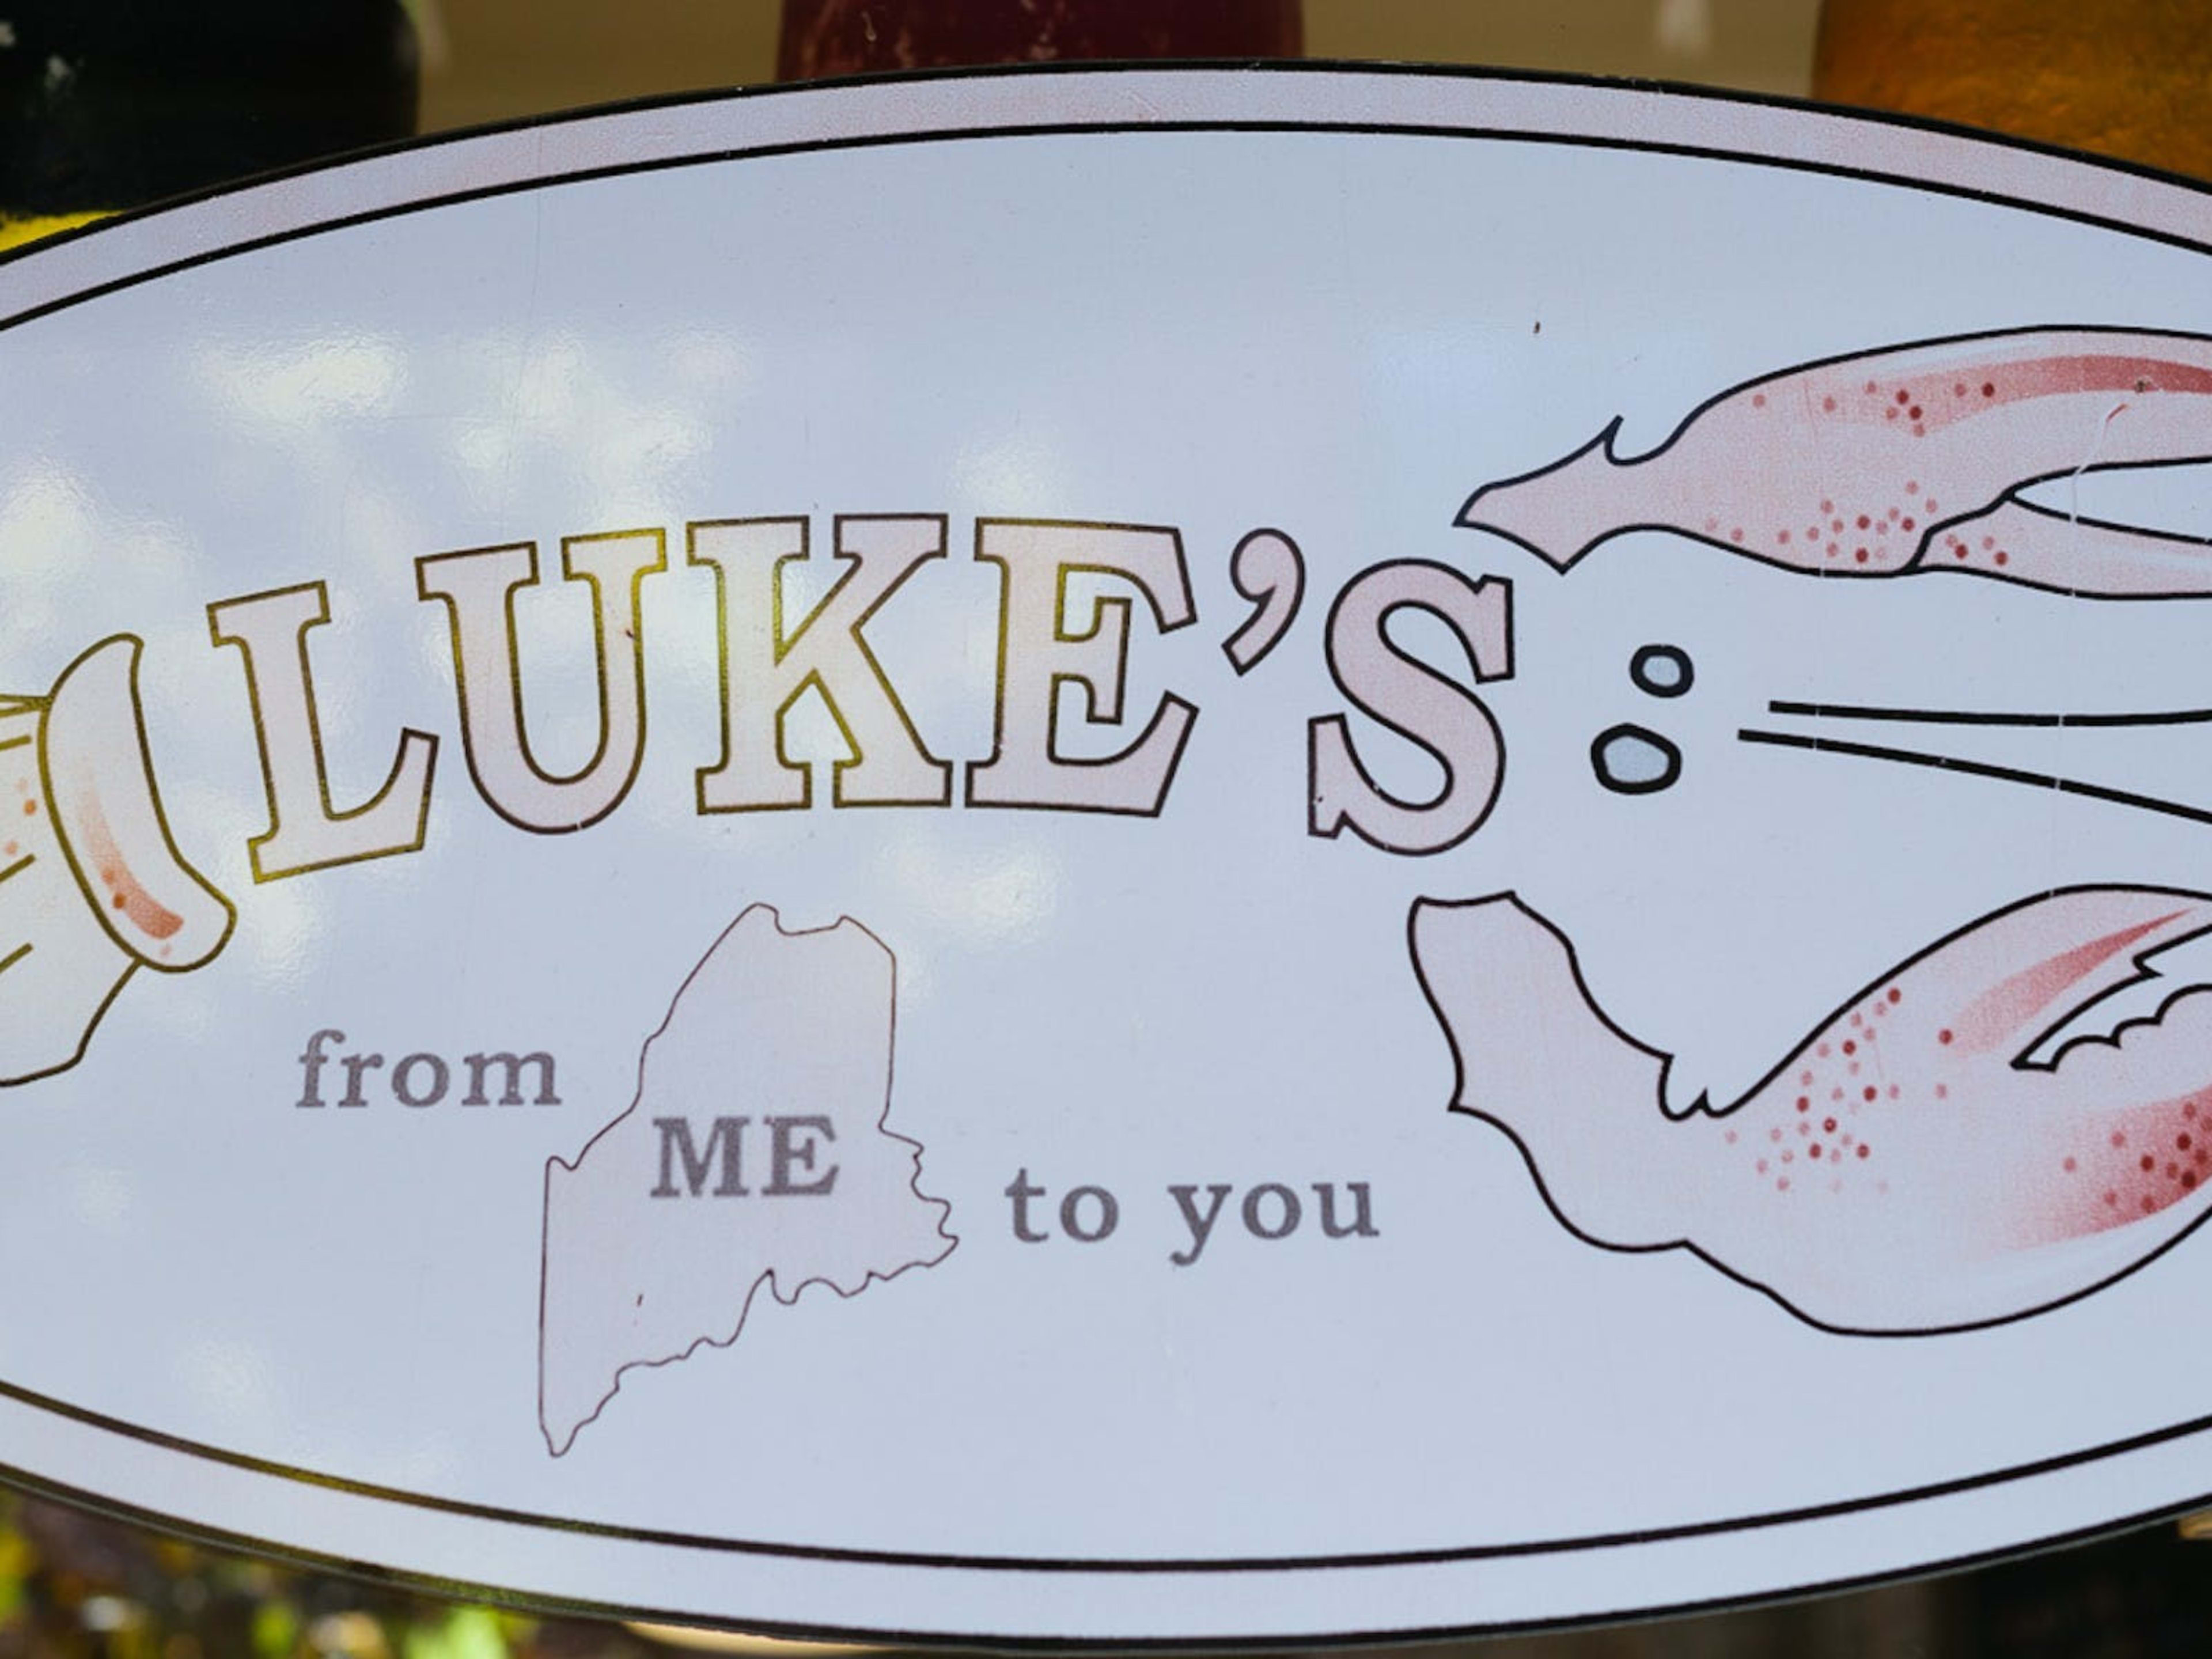 Luke’s Lobster image